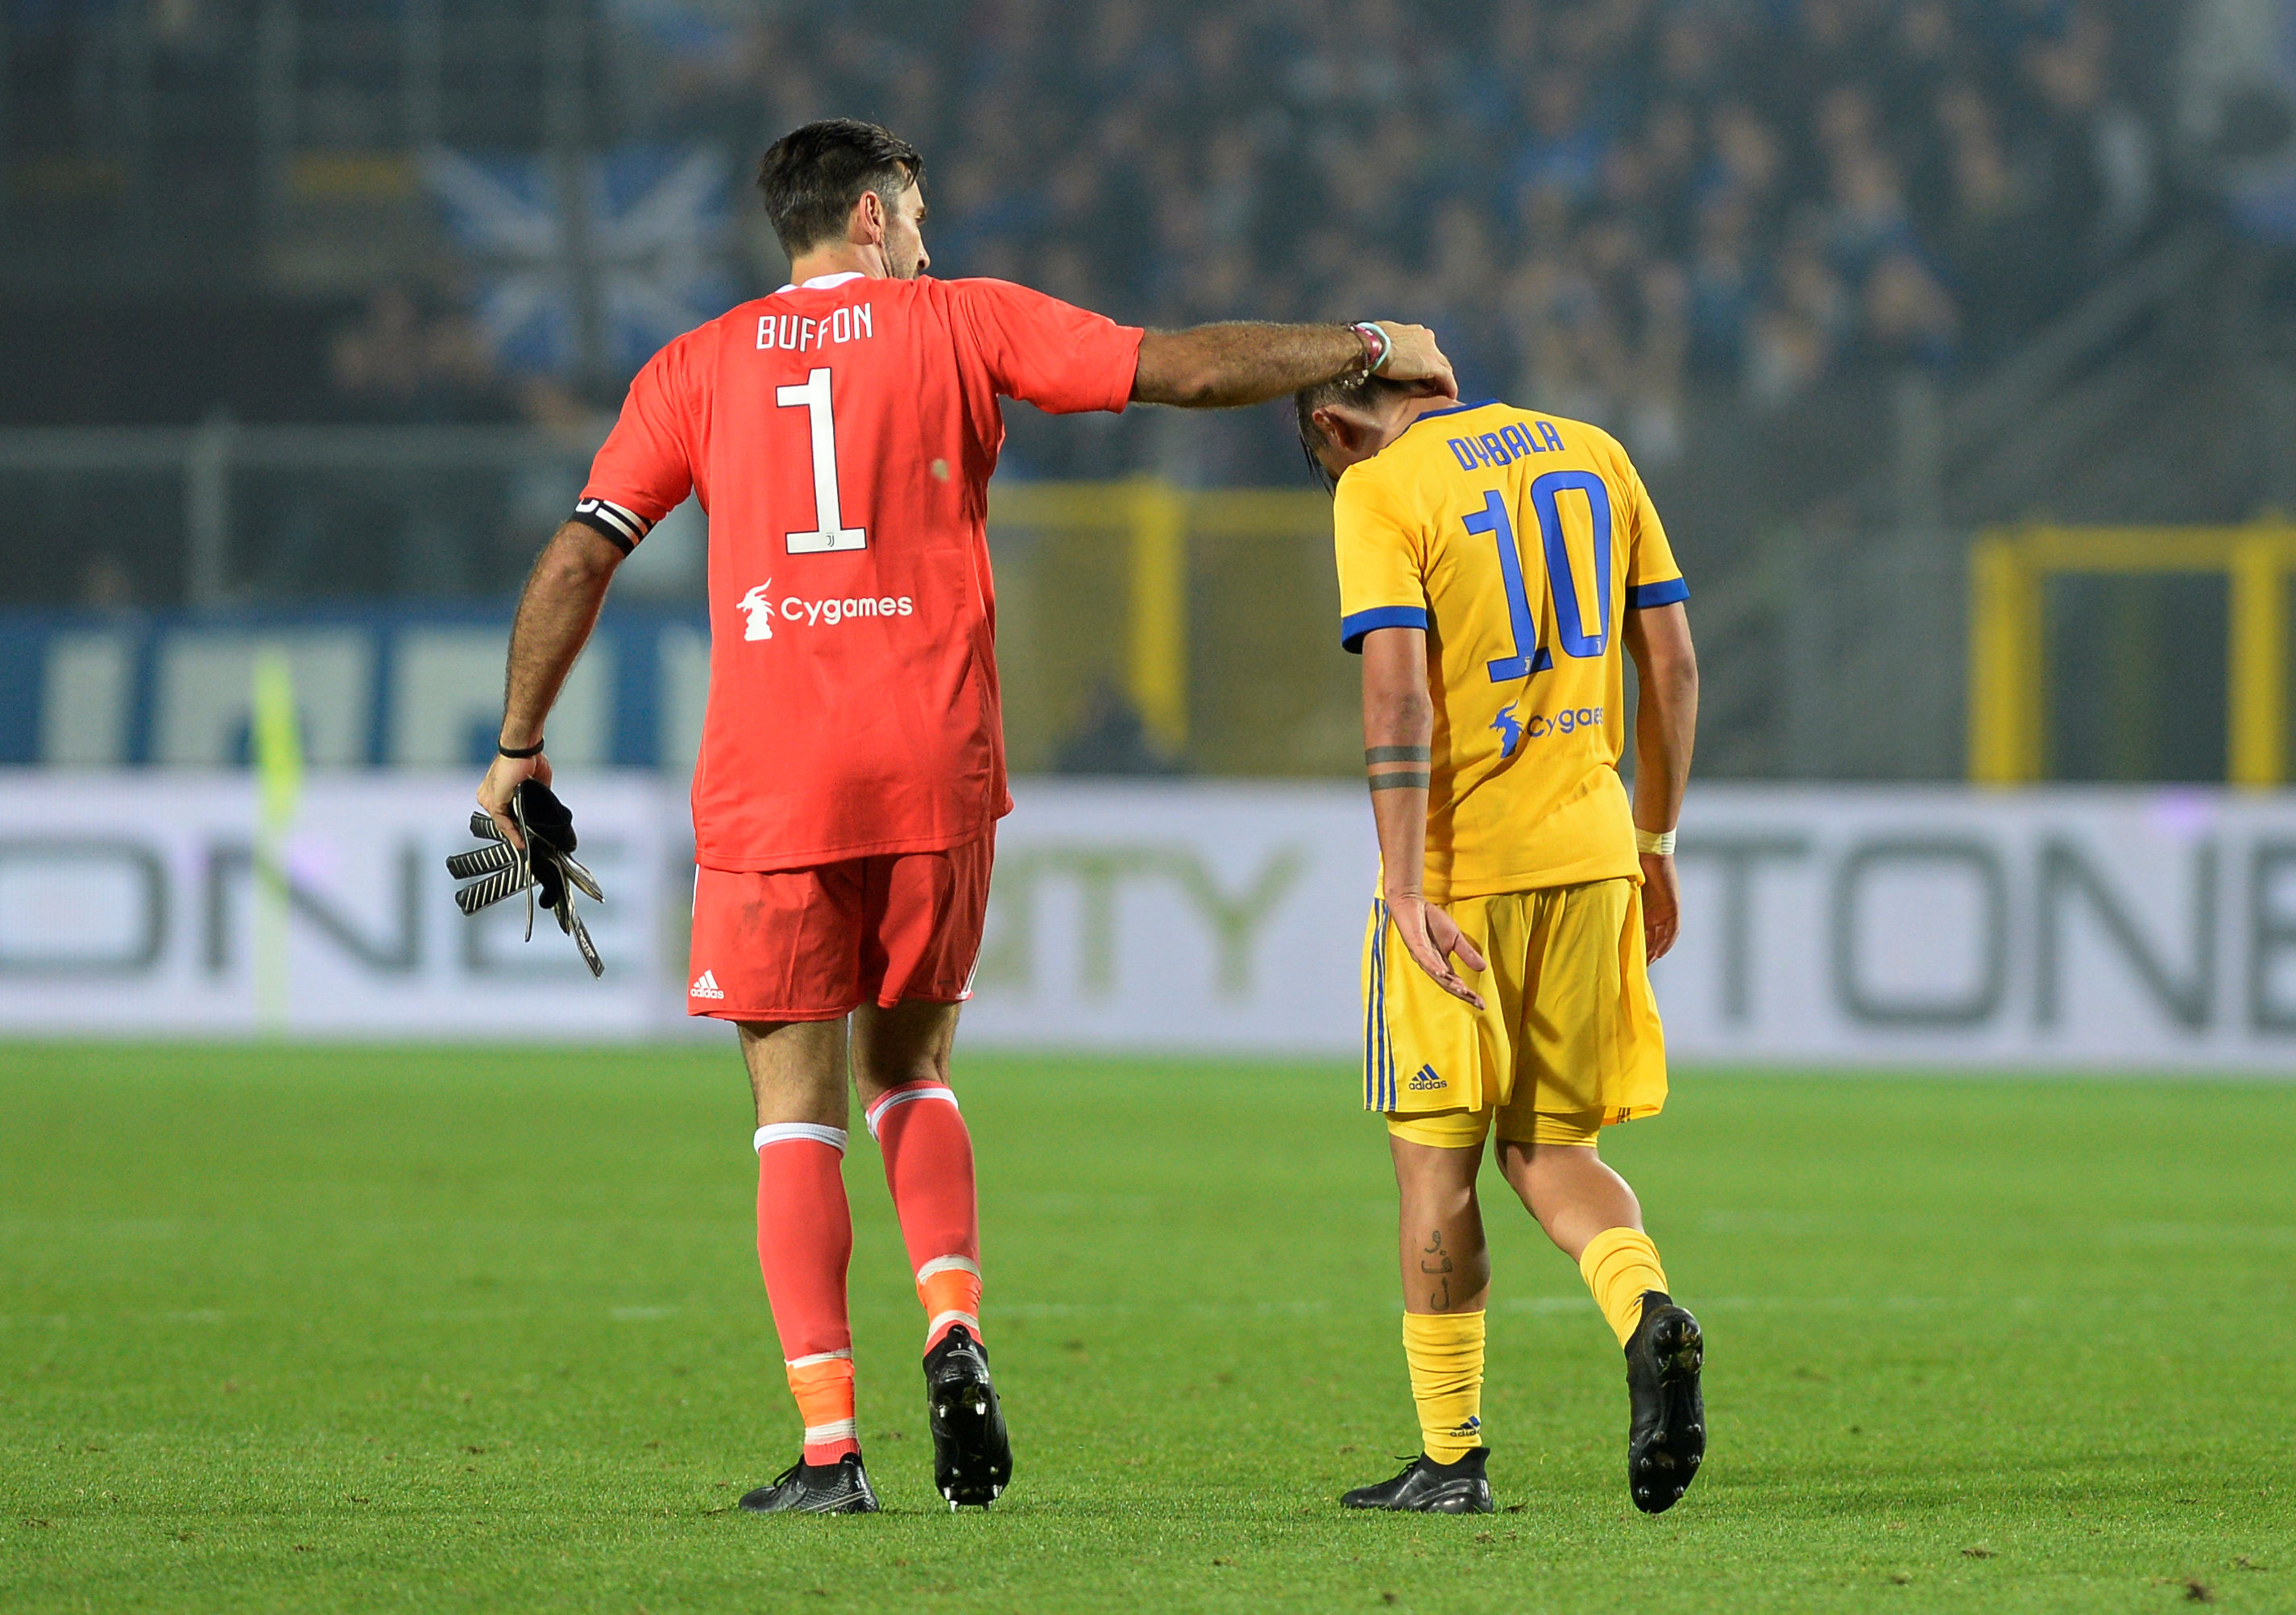 Buffon an ủi người đàn em Dybala sau trận đấu. Ảnh: REUTERS